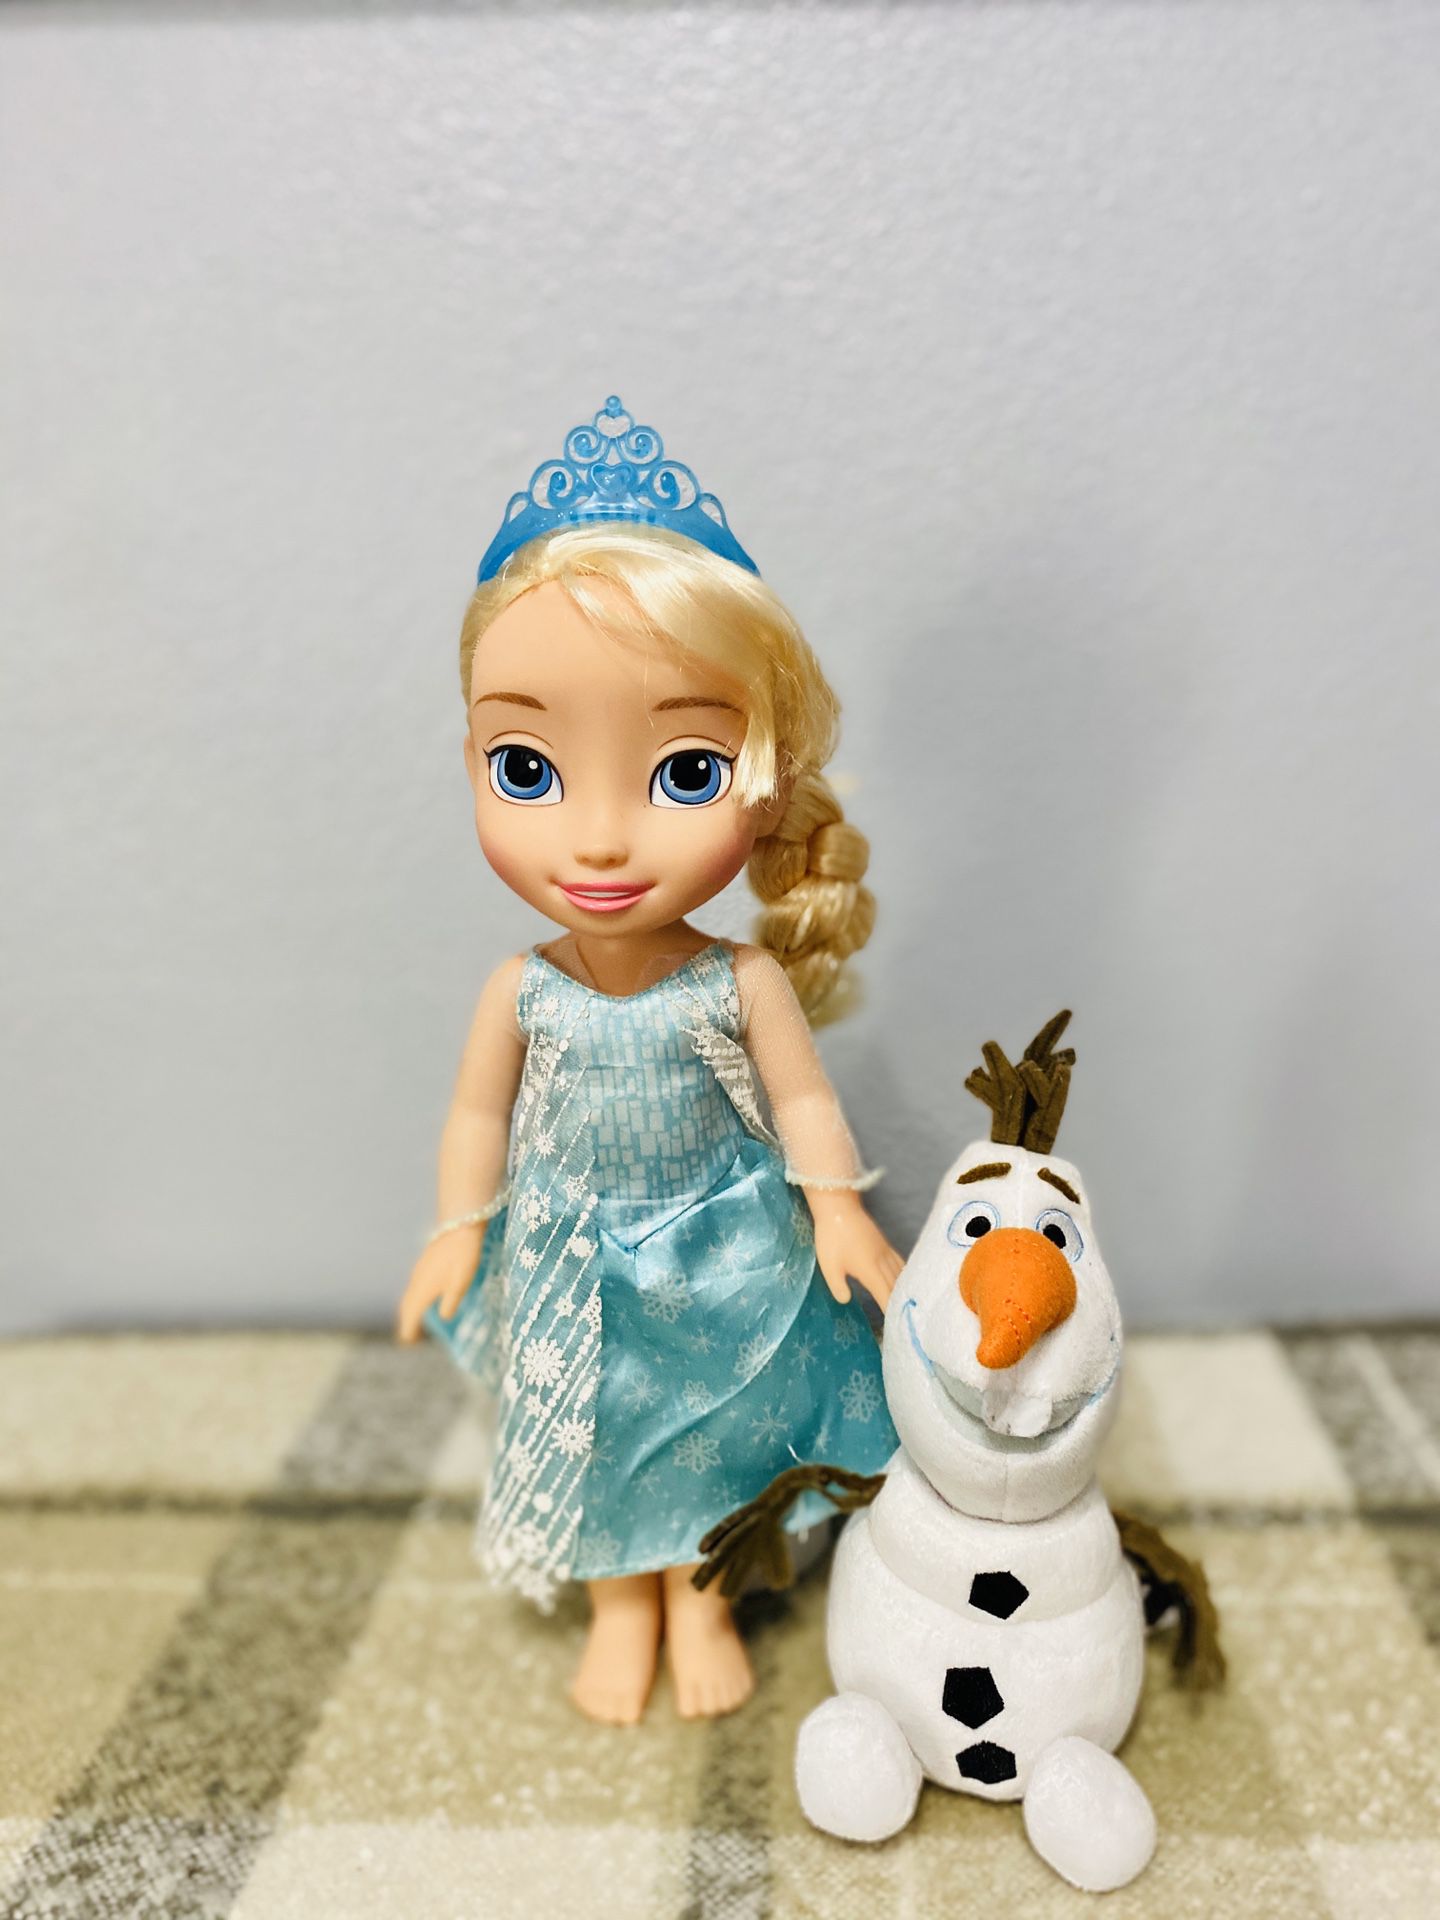 Disney Elsa doll and Olaf plush